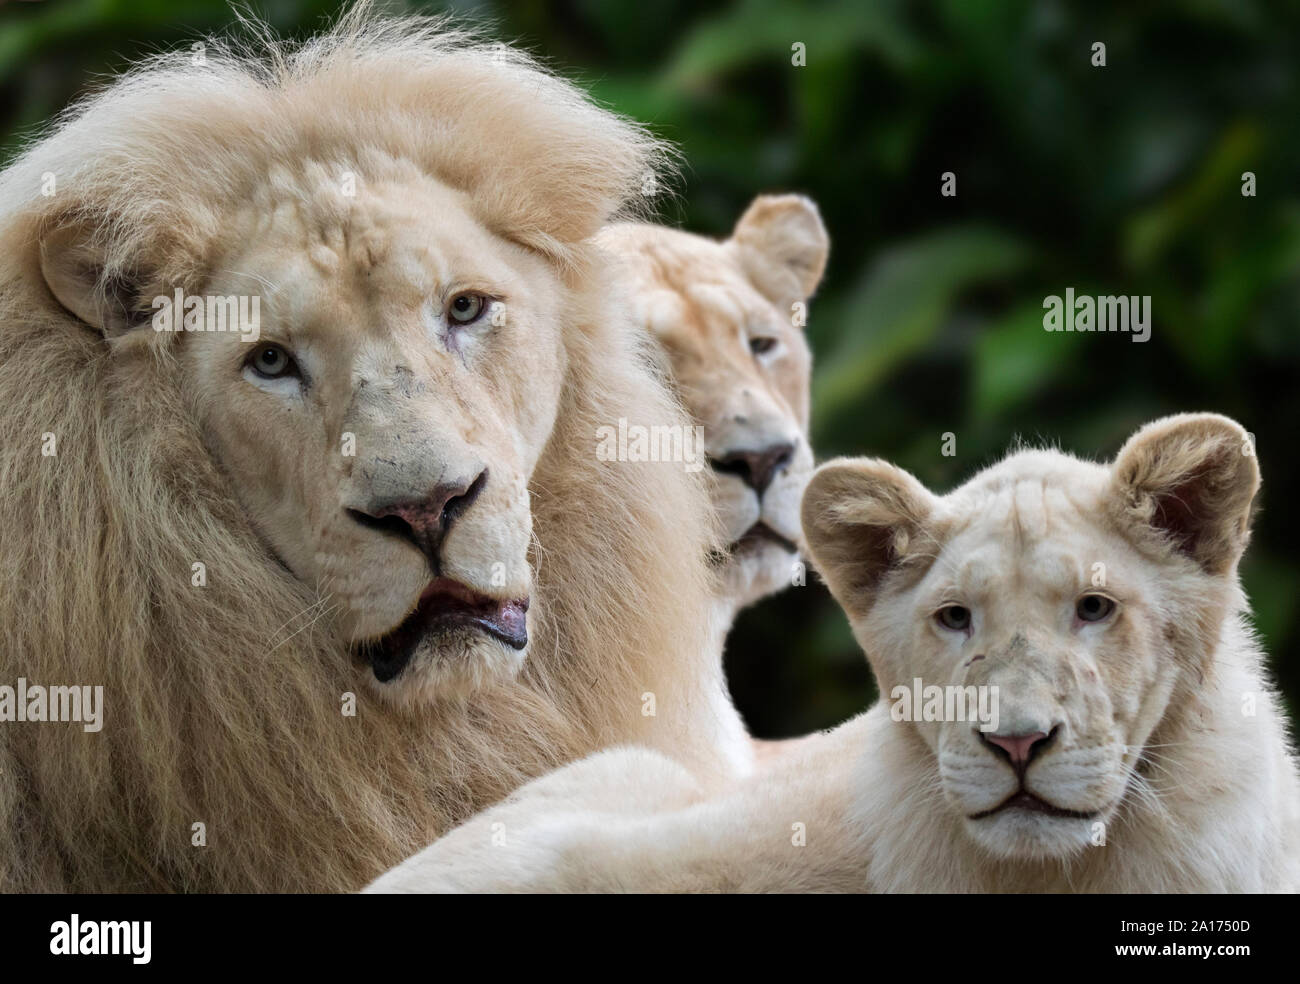 Mann, Frau und Jungen leucistic weißen Löwen (Panthera leo krugeri) selten Morph mit genetischen Zustand namens leucism durch rezessive Allel verursacht Stockfoto